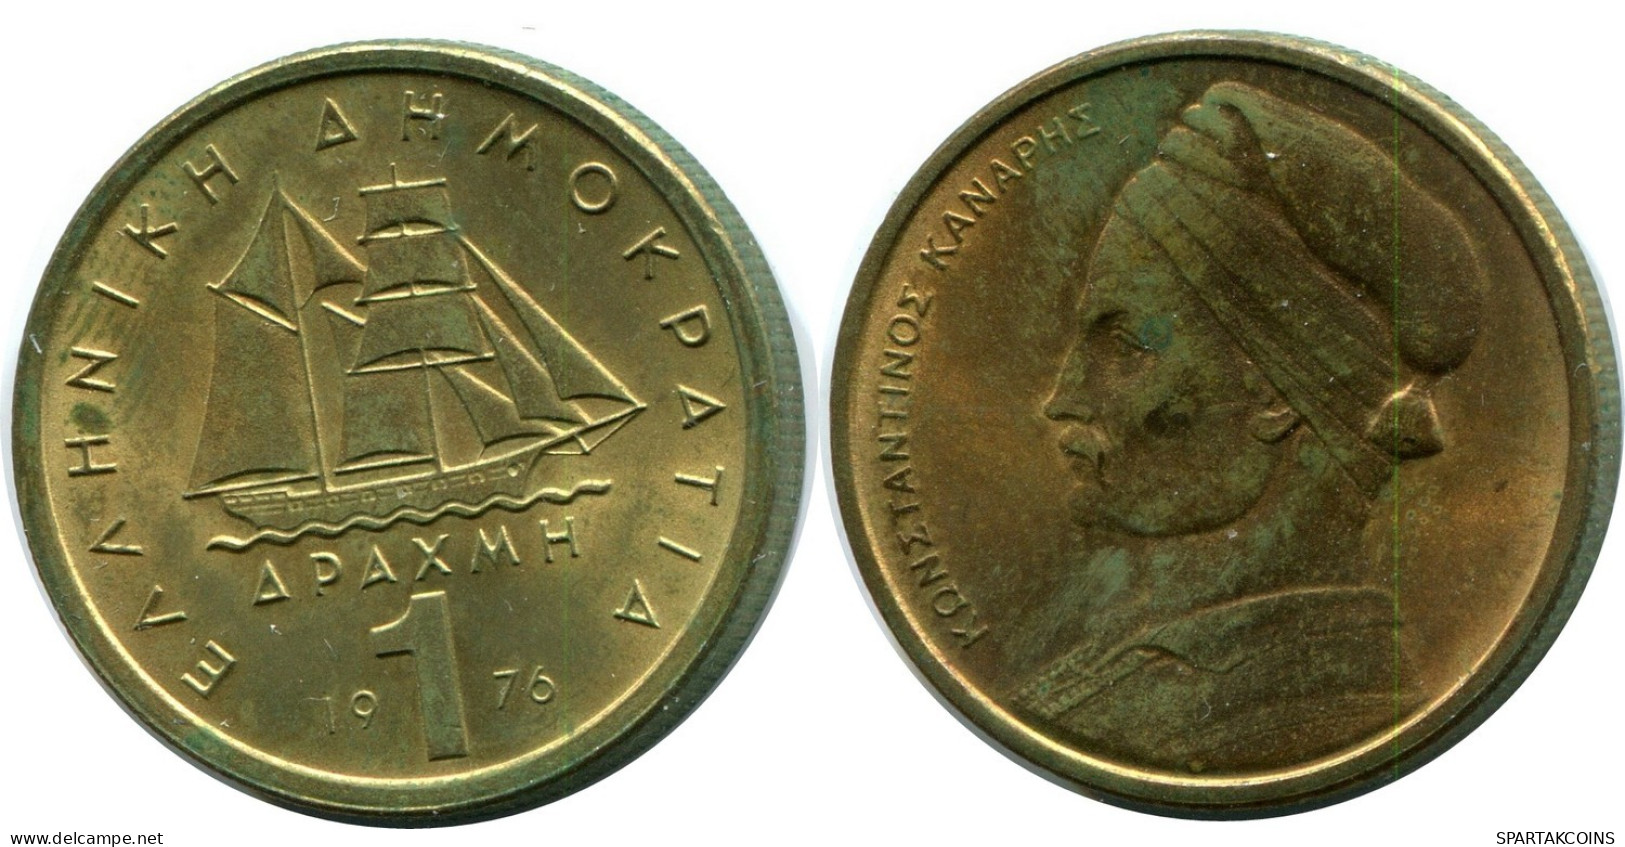 1 DRACHMA 1976 GRECIA GREECE Moneda #AW705.E.A - Griekenland